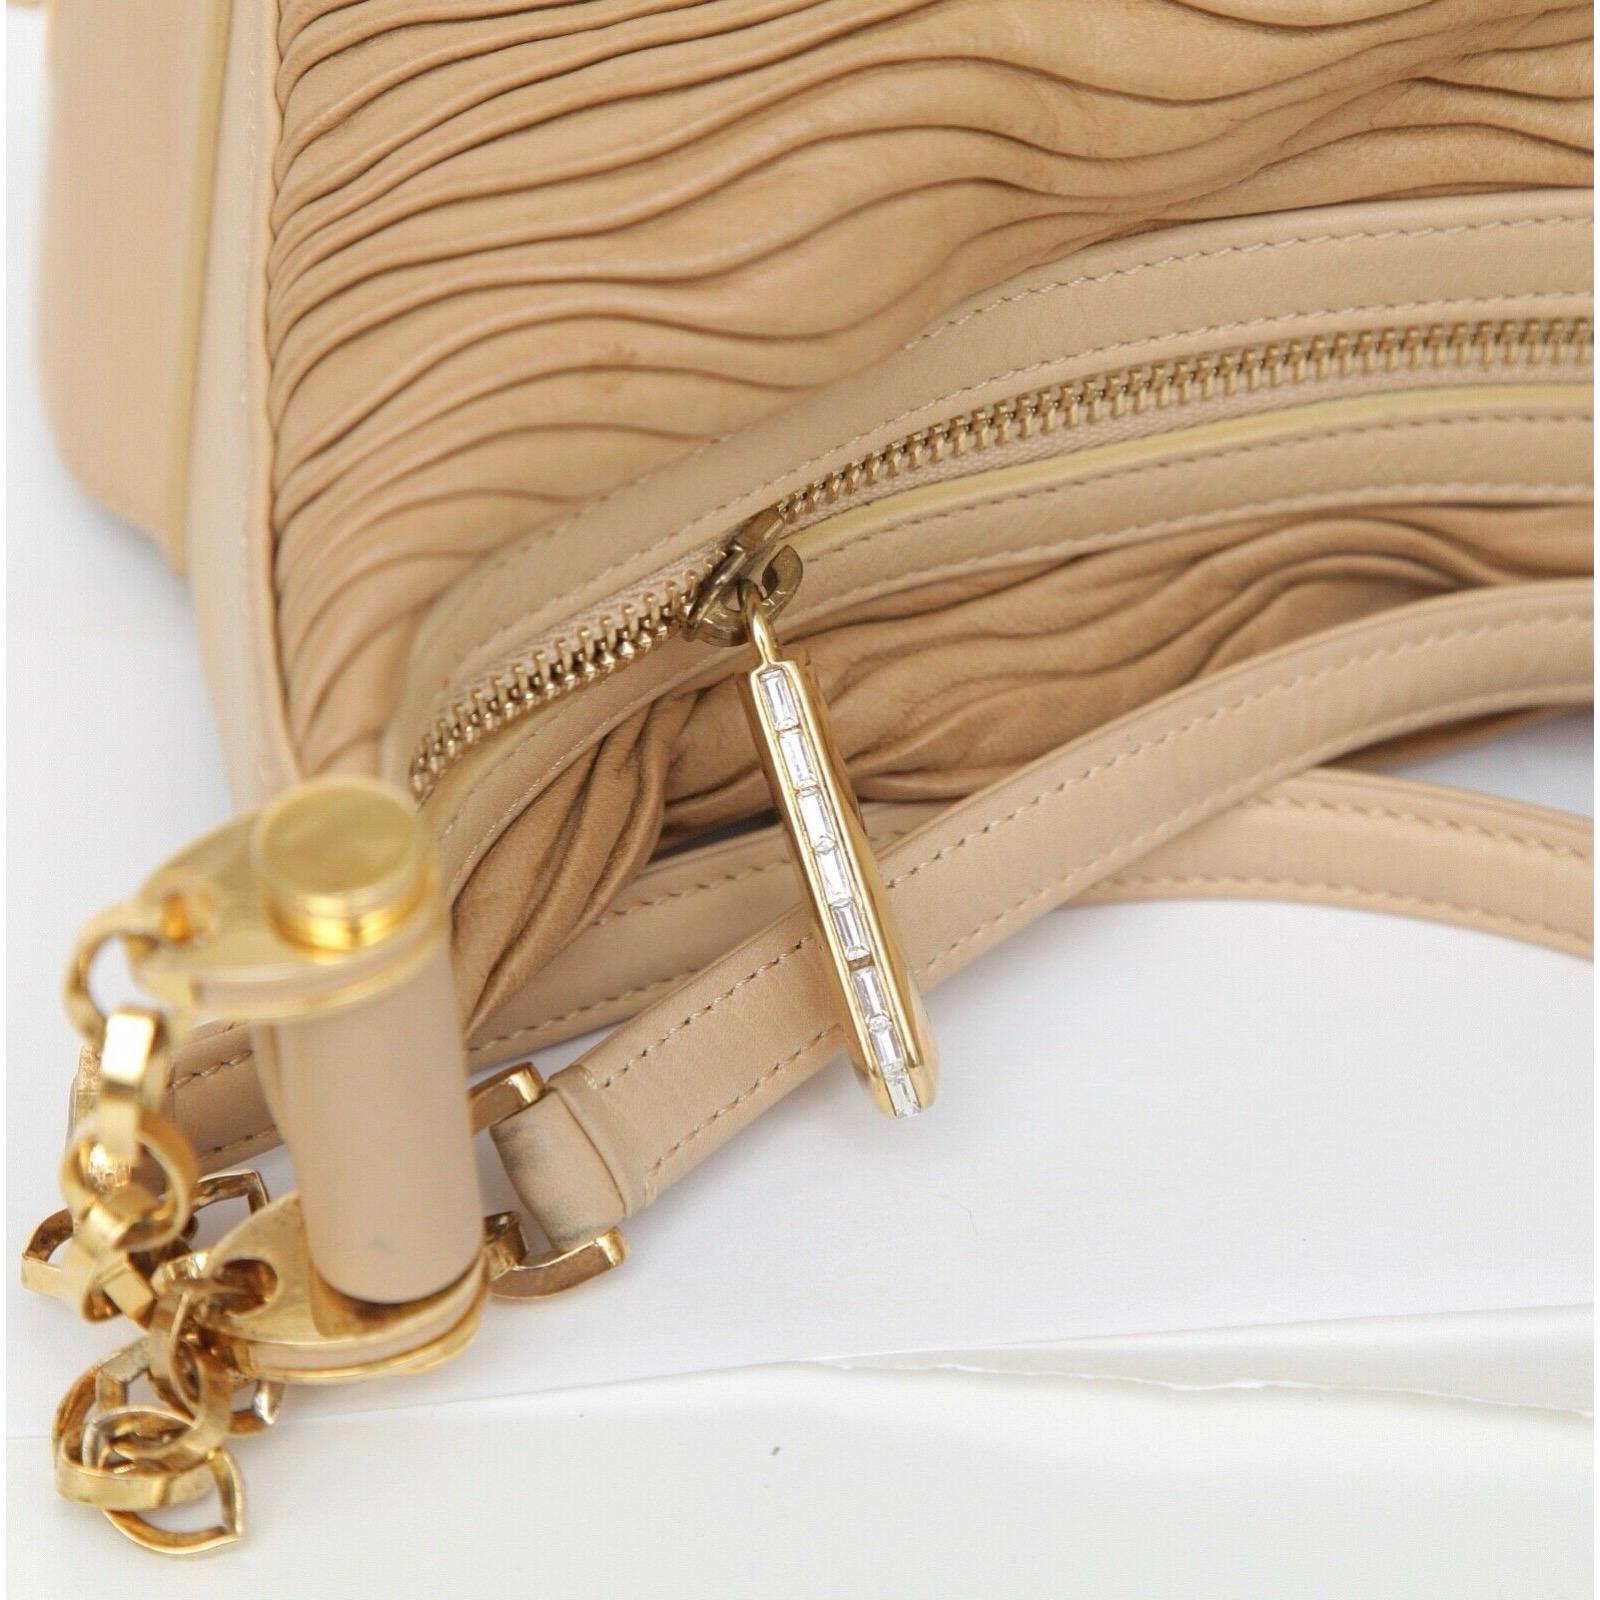 JUDITH LEIBER Leather Shoulder Bag Hobo Beige Gold-Tone HW Crystal Top Zipper For Sale 1